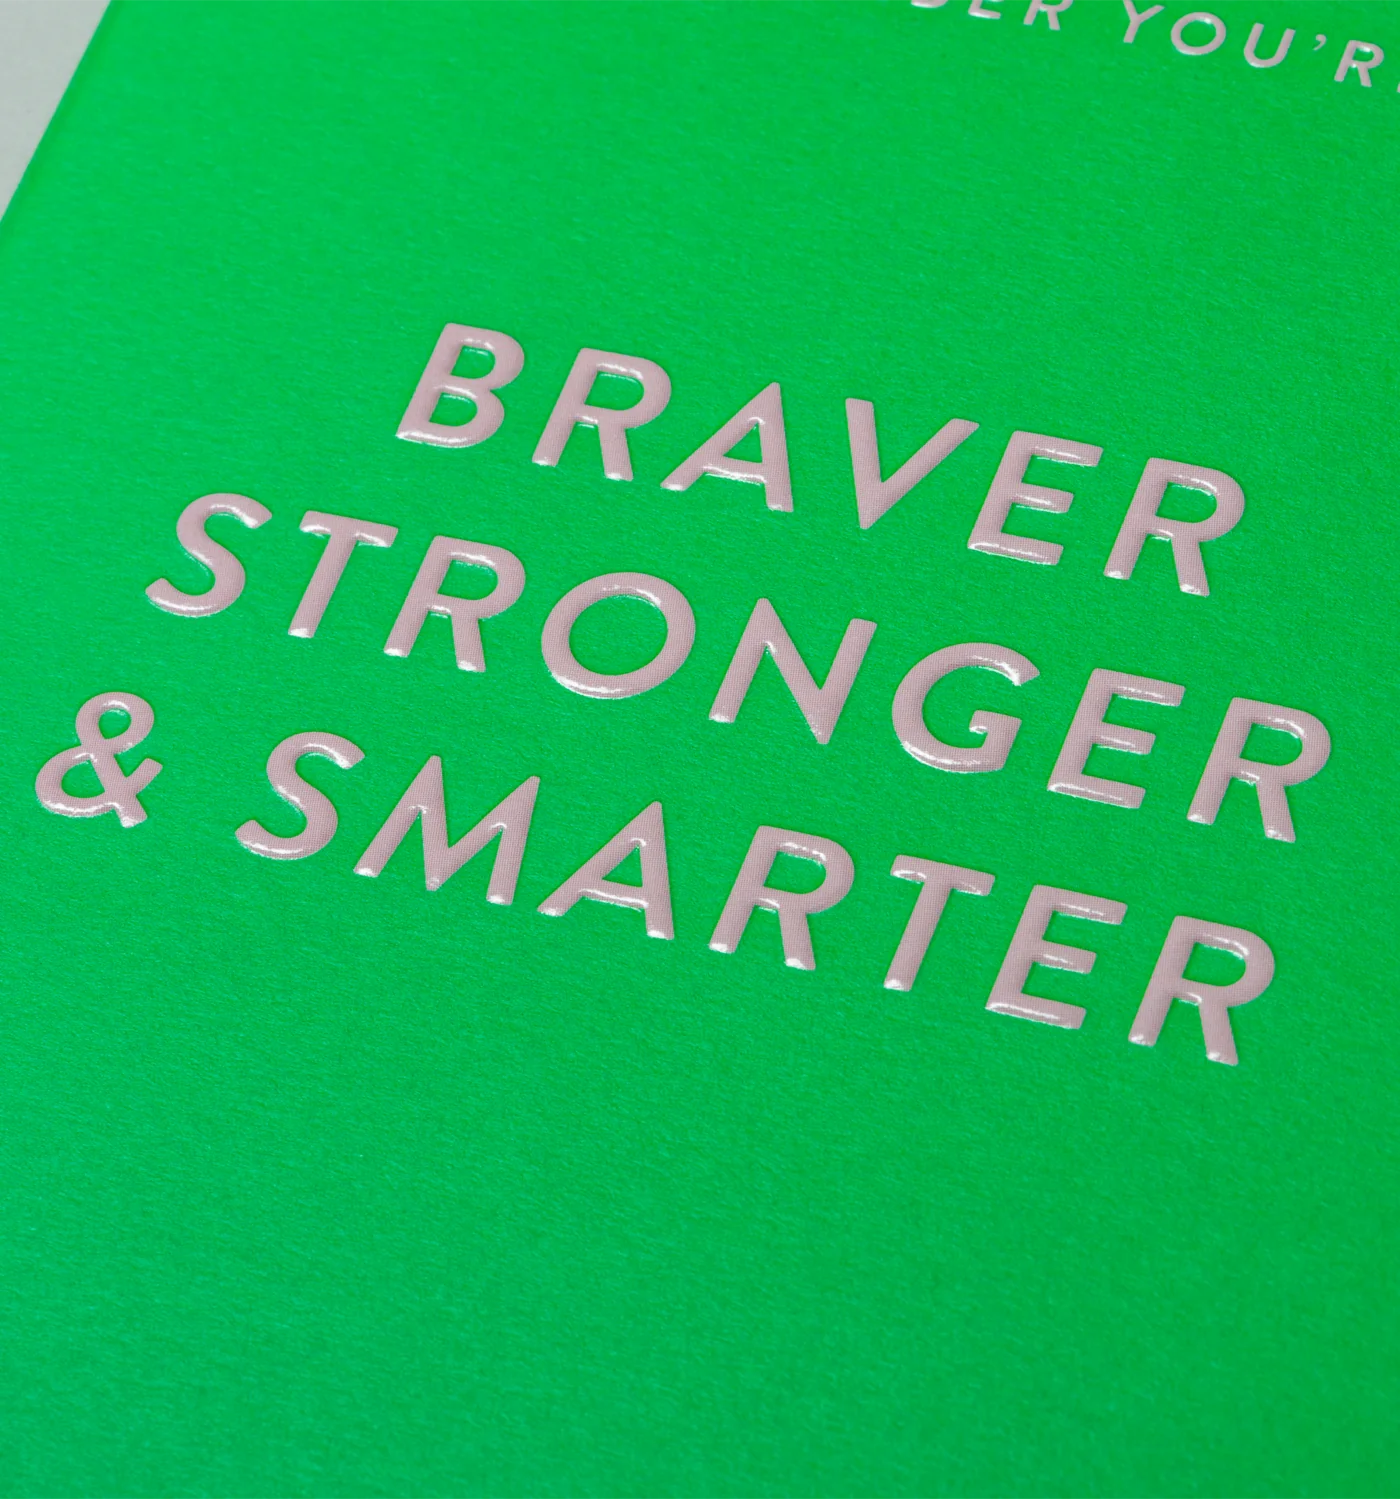 Braver, Stronger & Smarter Love Card